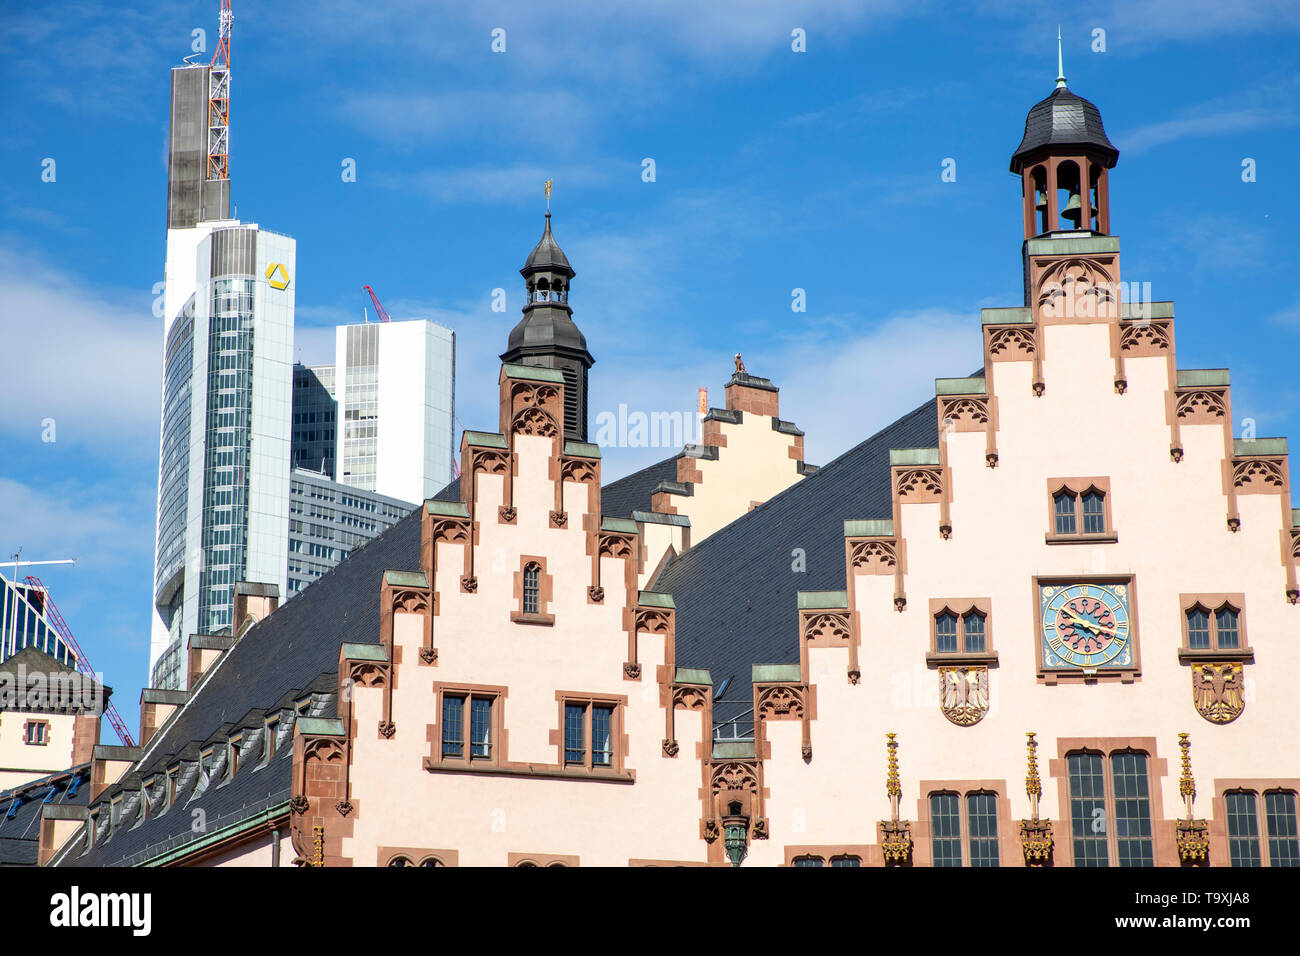 Der Römer, Rathaus von  Frankfurt am Main,  Wahrzeichen der Stadt, Treppengiebelfassade, hinten, modernes Bankhochaus der Commerzbank, Stock Photo